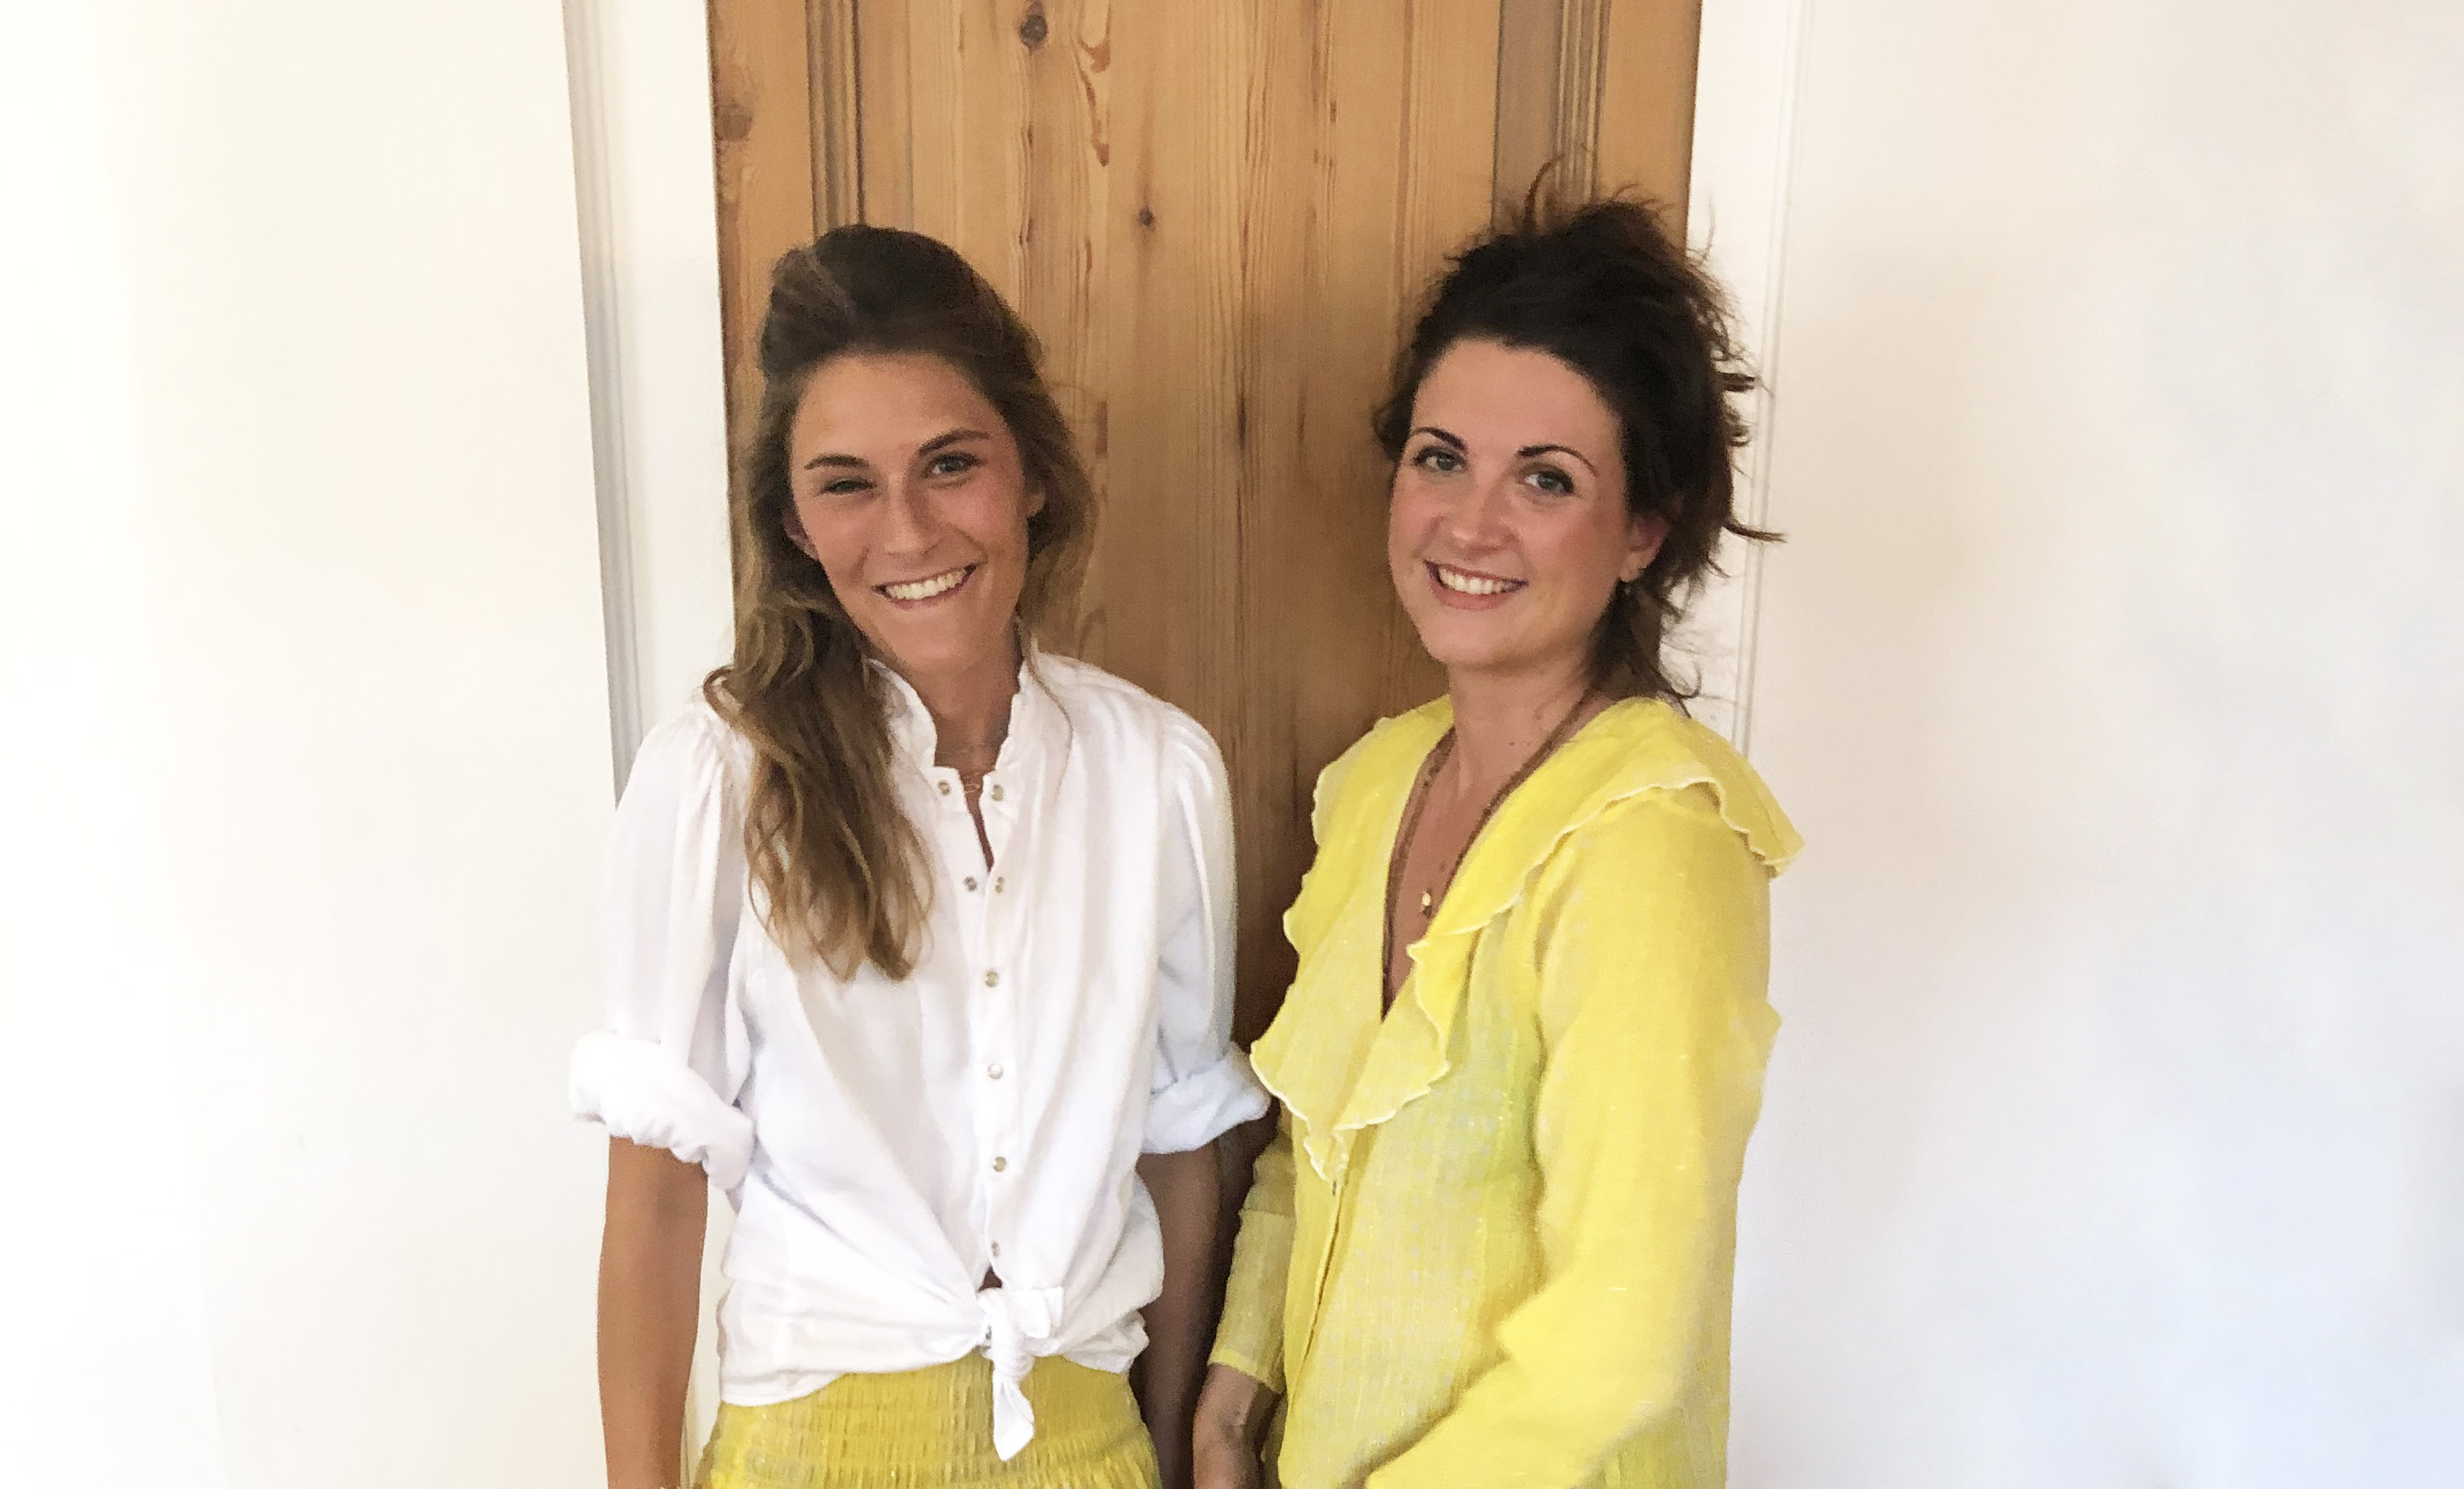 Cette semaine, retrouvez l’Interview rapido en mode “Shopping” avec Pauline & Charlotte, co-fondatrices d'APONE, la nouvelle marque de prêt-à-porter.